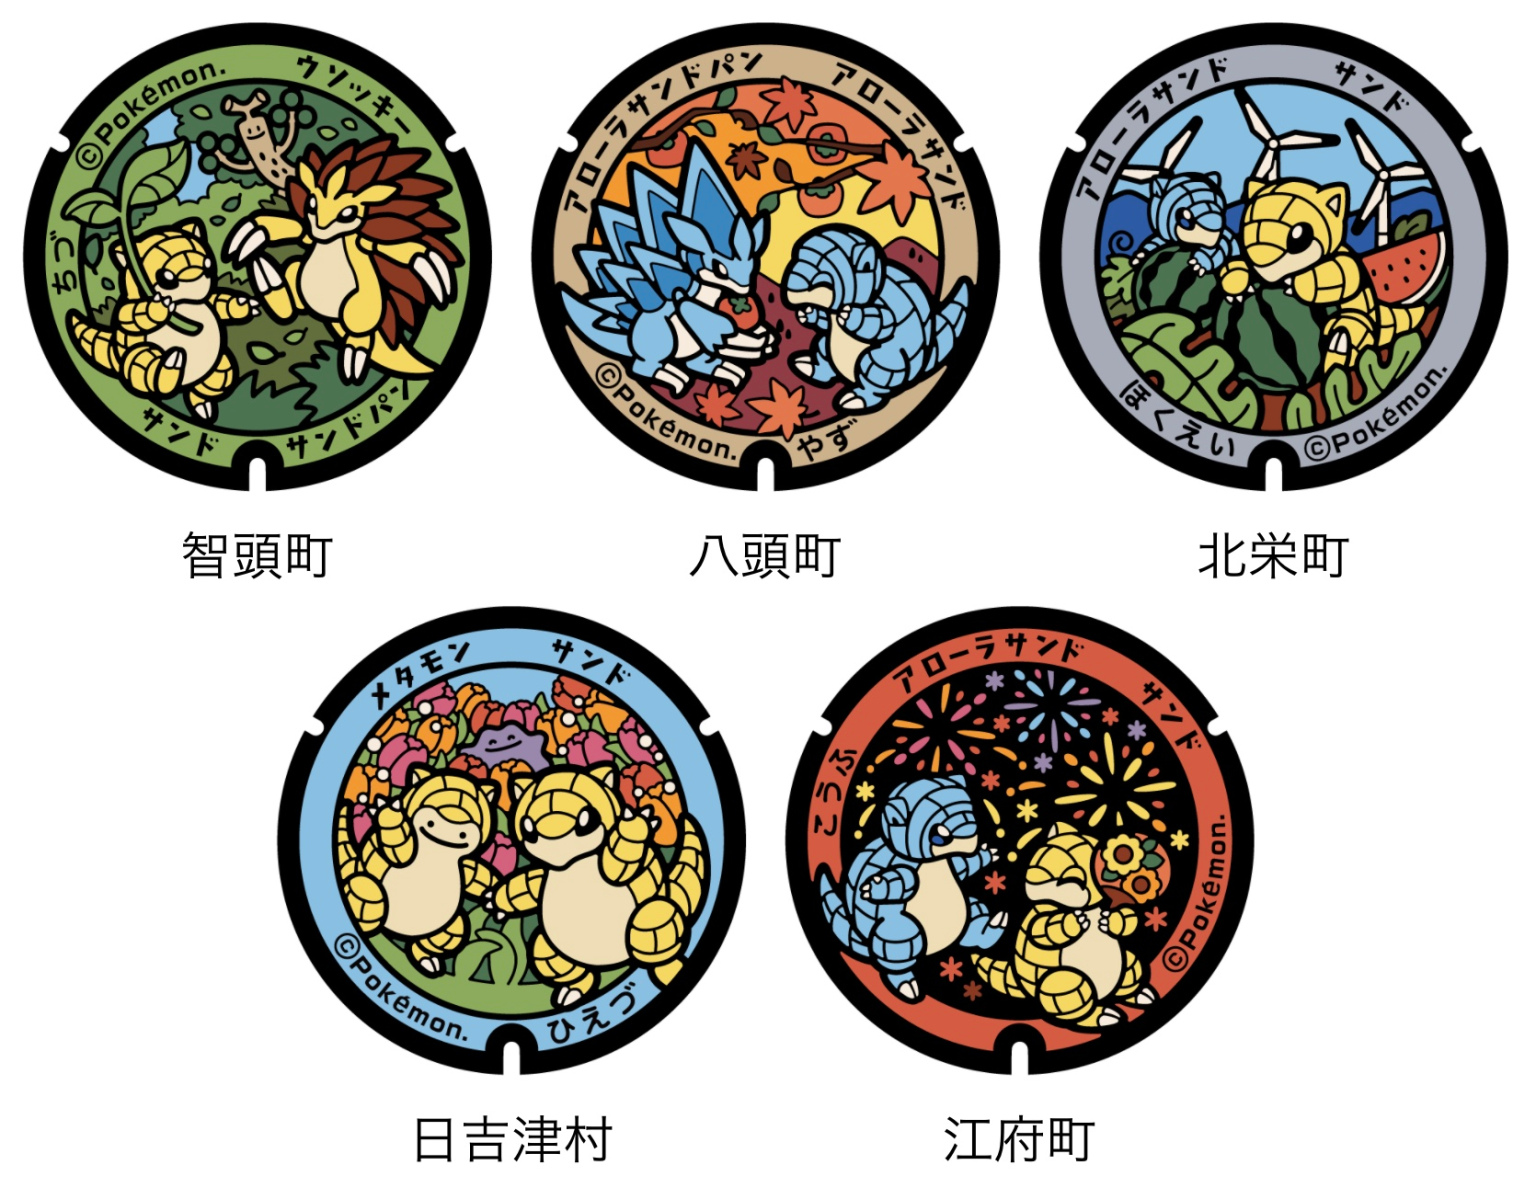 Província de Tottori ganha lindas tampas de bueiro Pokémon